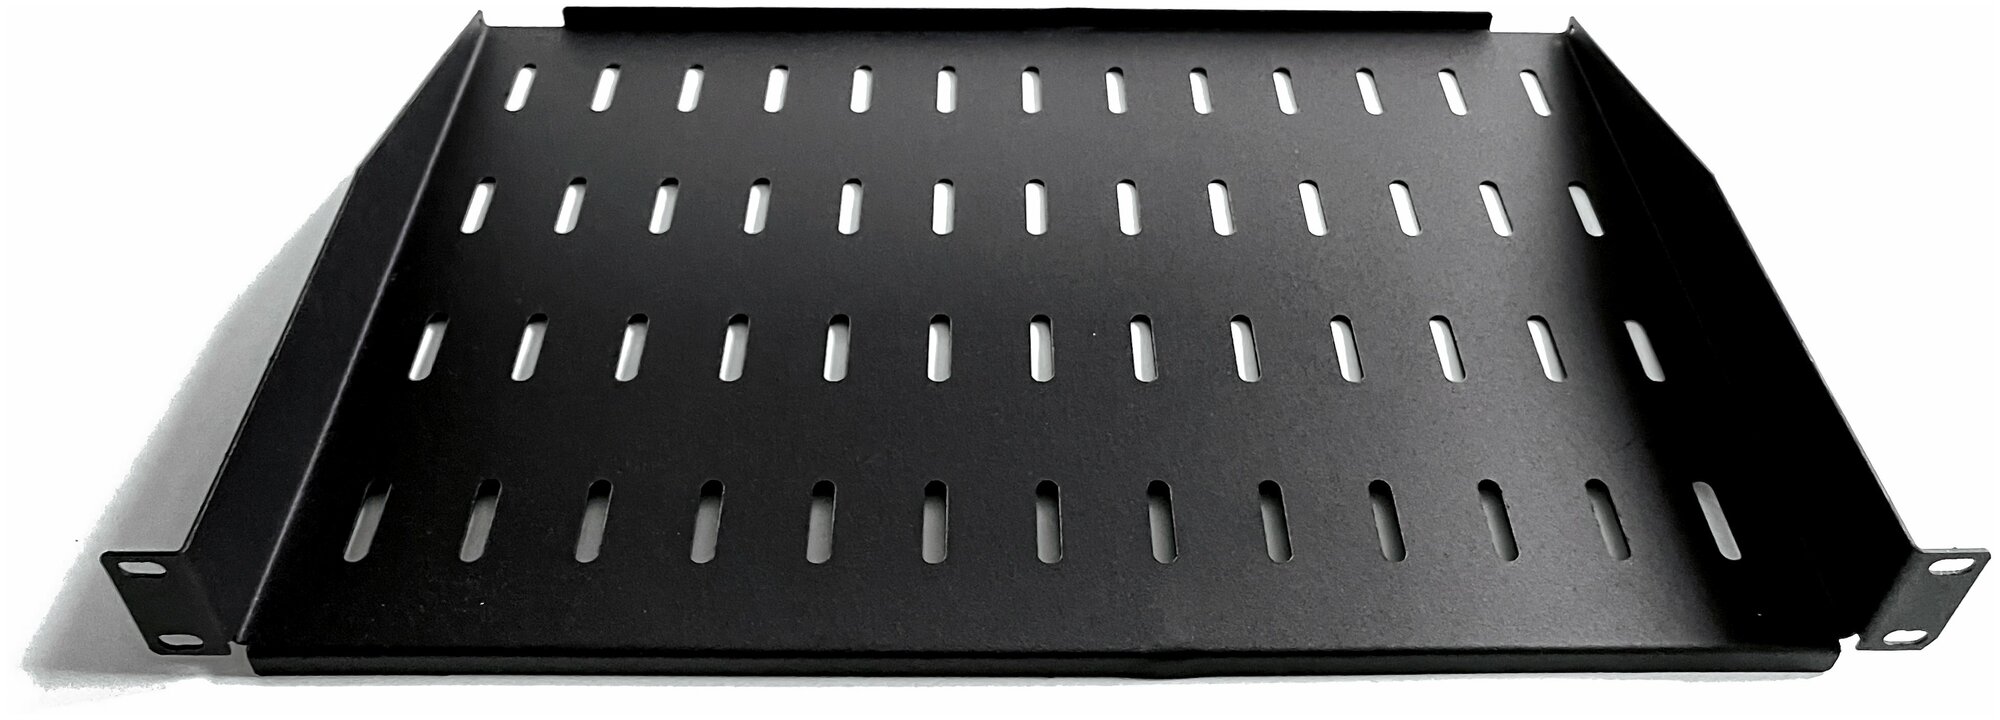 Полка 19 дюймов консольная универсальная 200мм черная: 19box-С-20/B